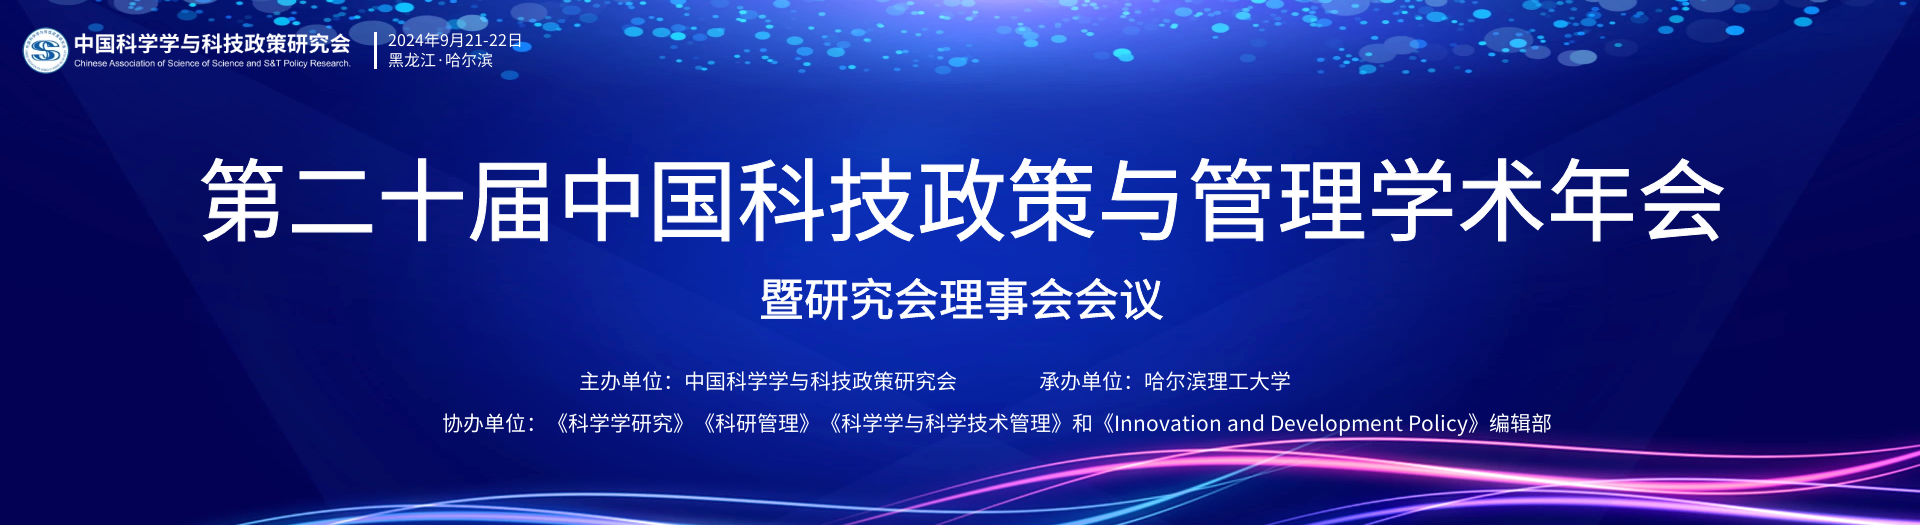 第二十届中国科技政策与管理学术年会暨研究会理事会